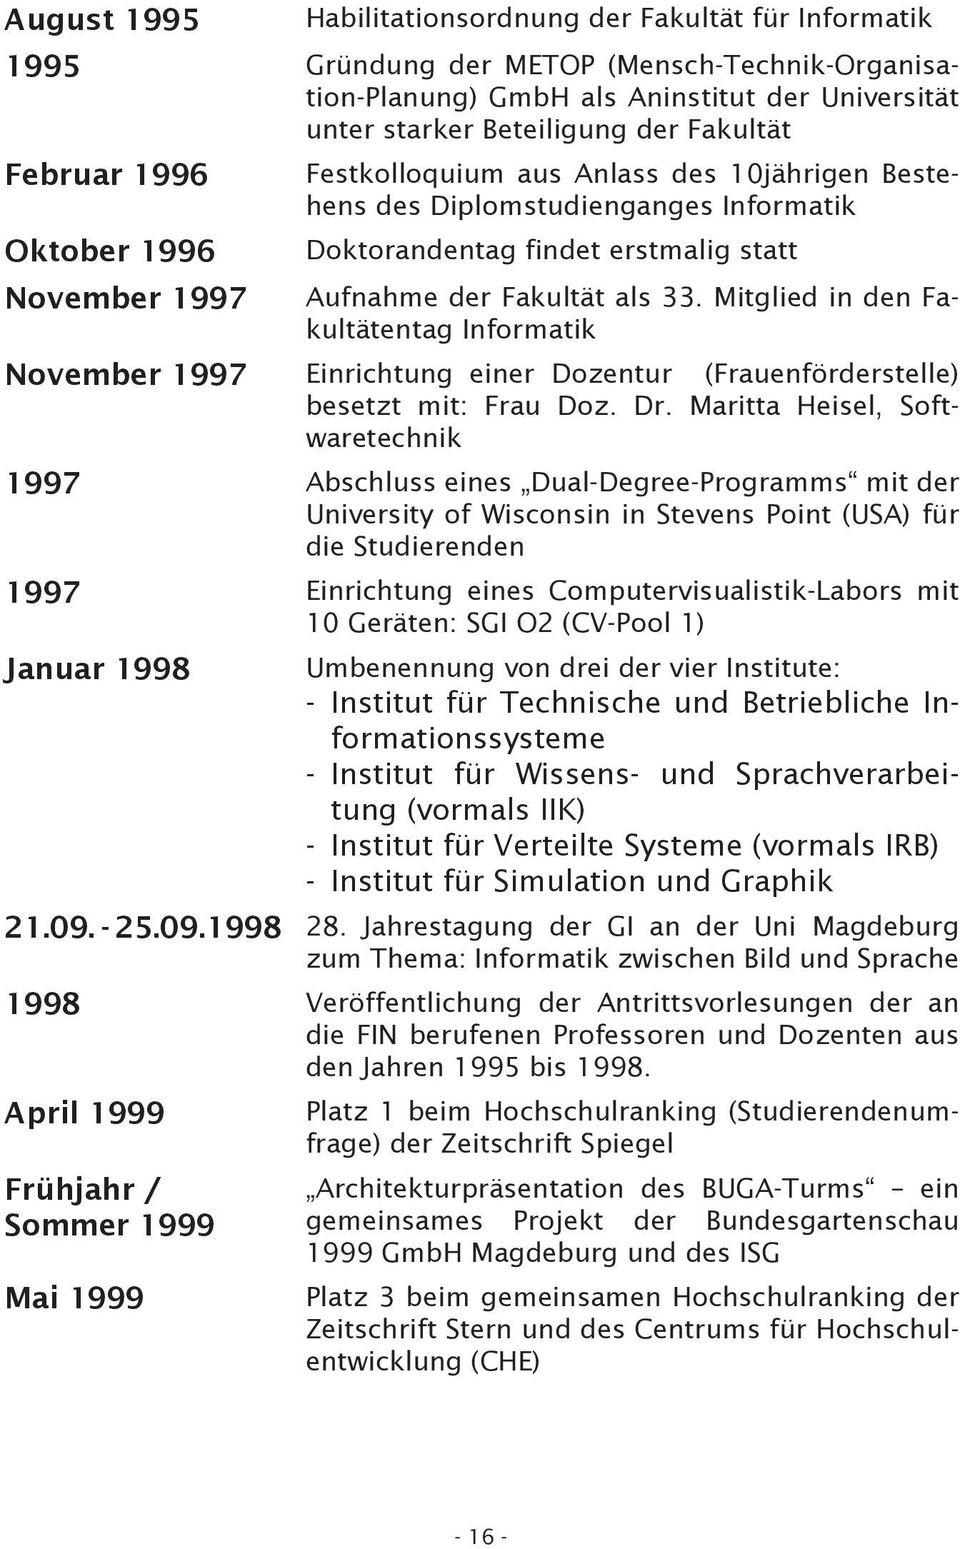 Mitglied in den Fakultätentag Informatik November 1997 Einrichtung einer Dozentur (Frauenförderstelle) besetzt mit: Frau Doz. Dr.